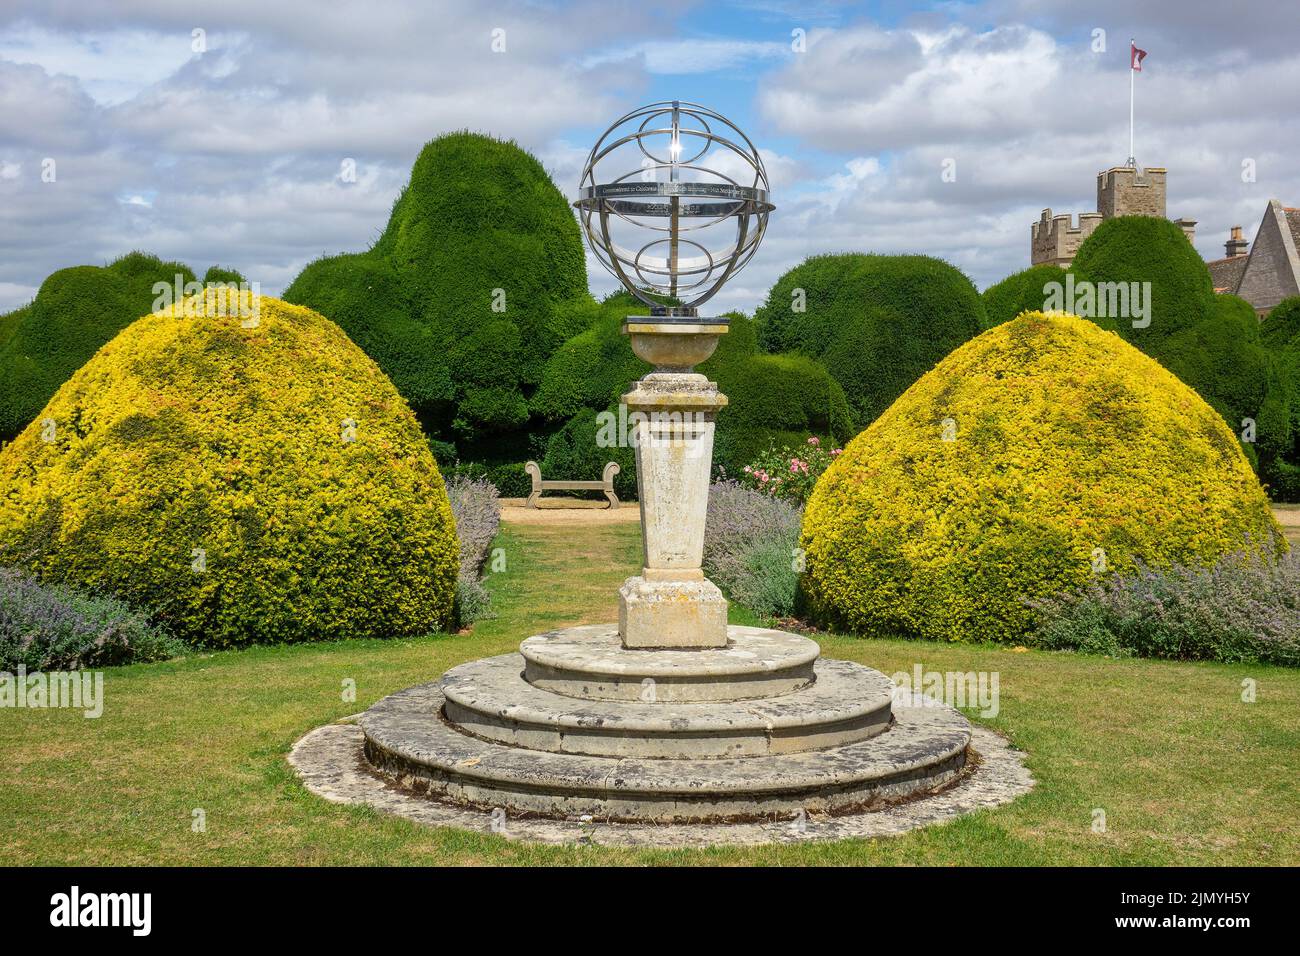 Angleterre, Northamptonshire, jardins du château de Rockingham et sphère armillaire Banque D'Images